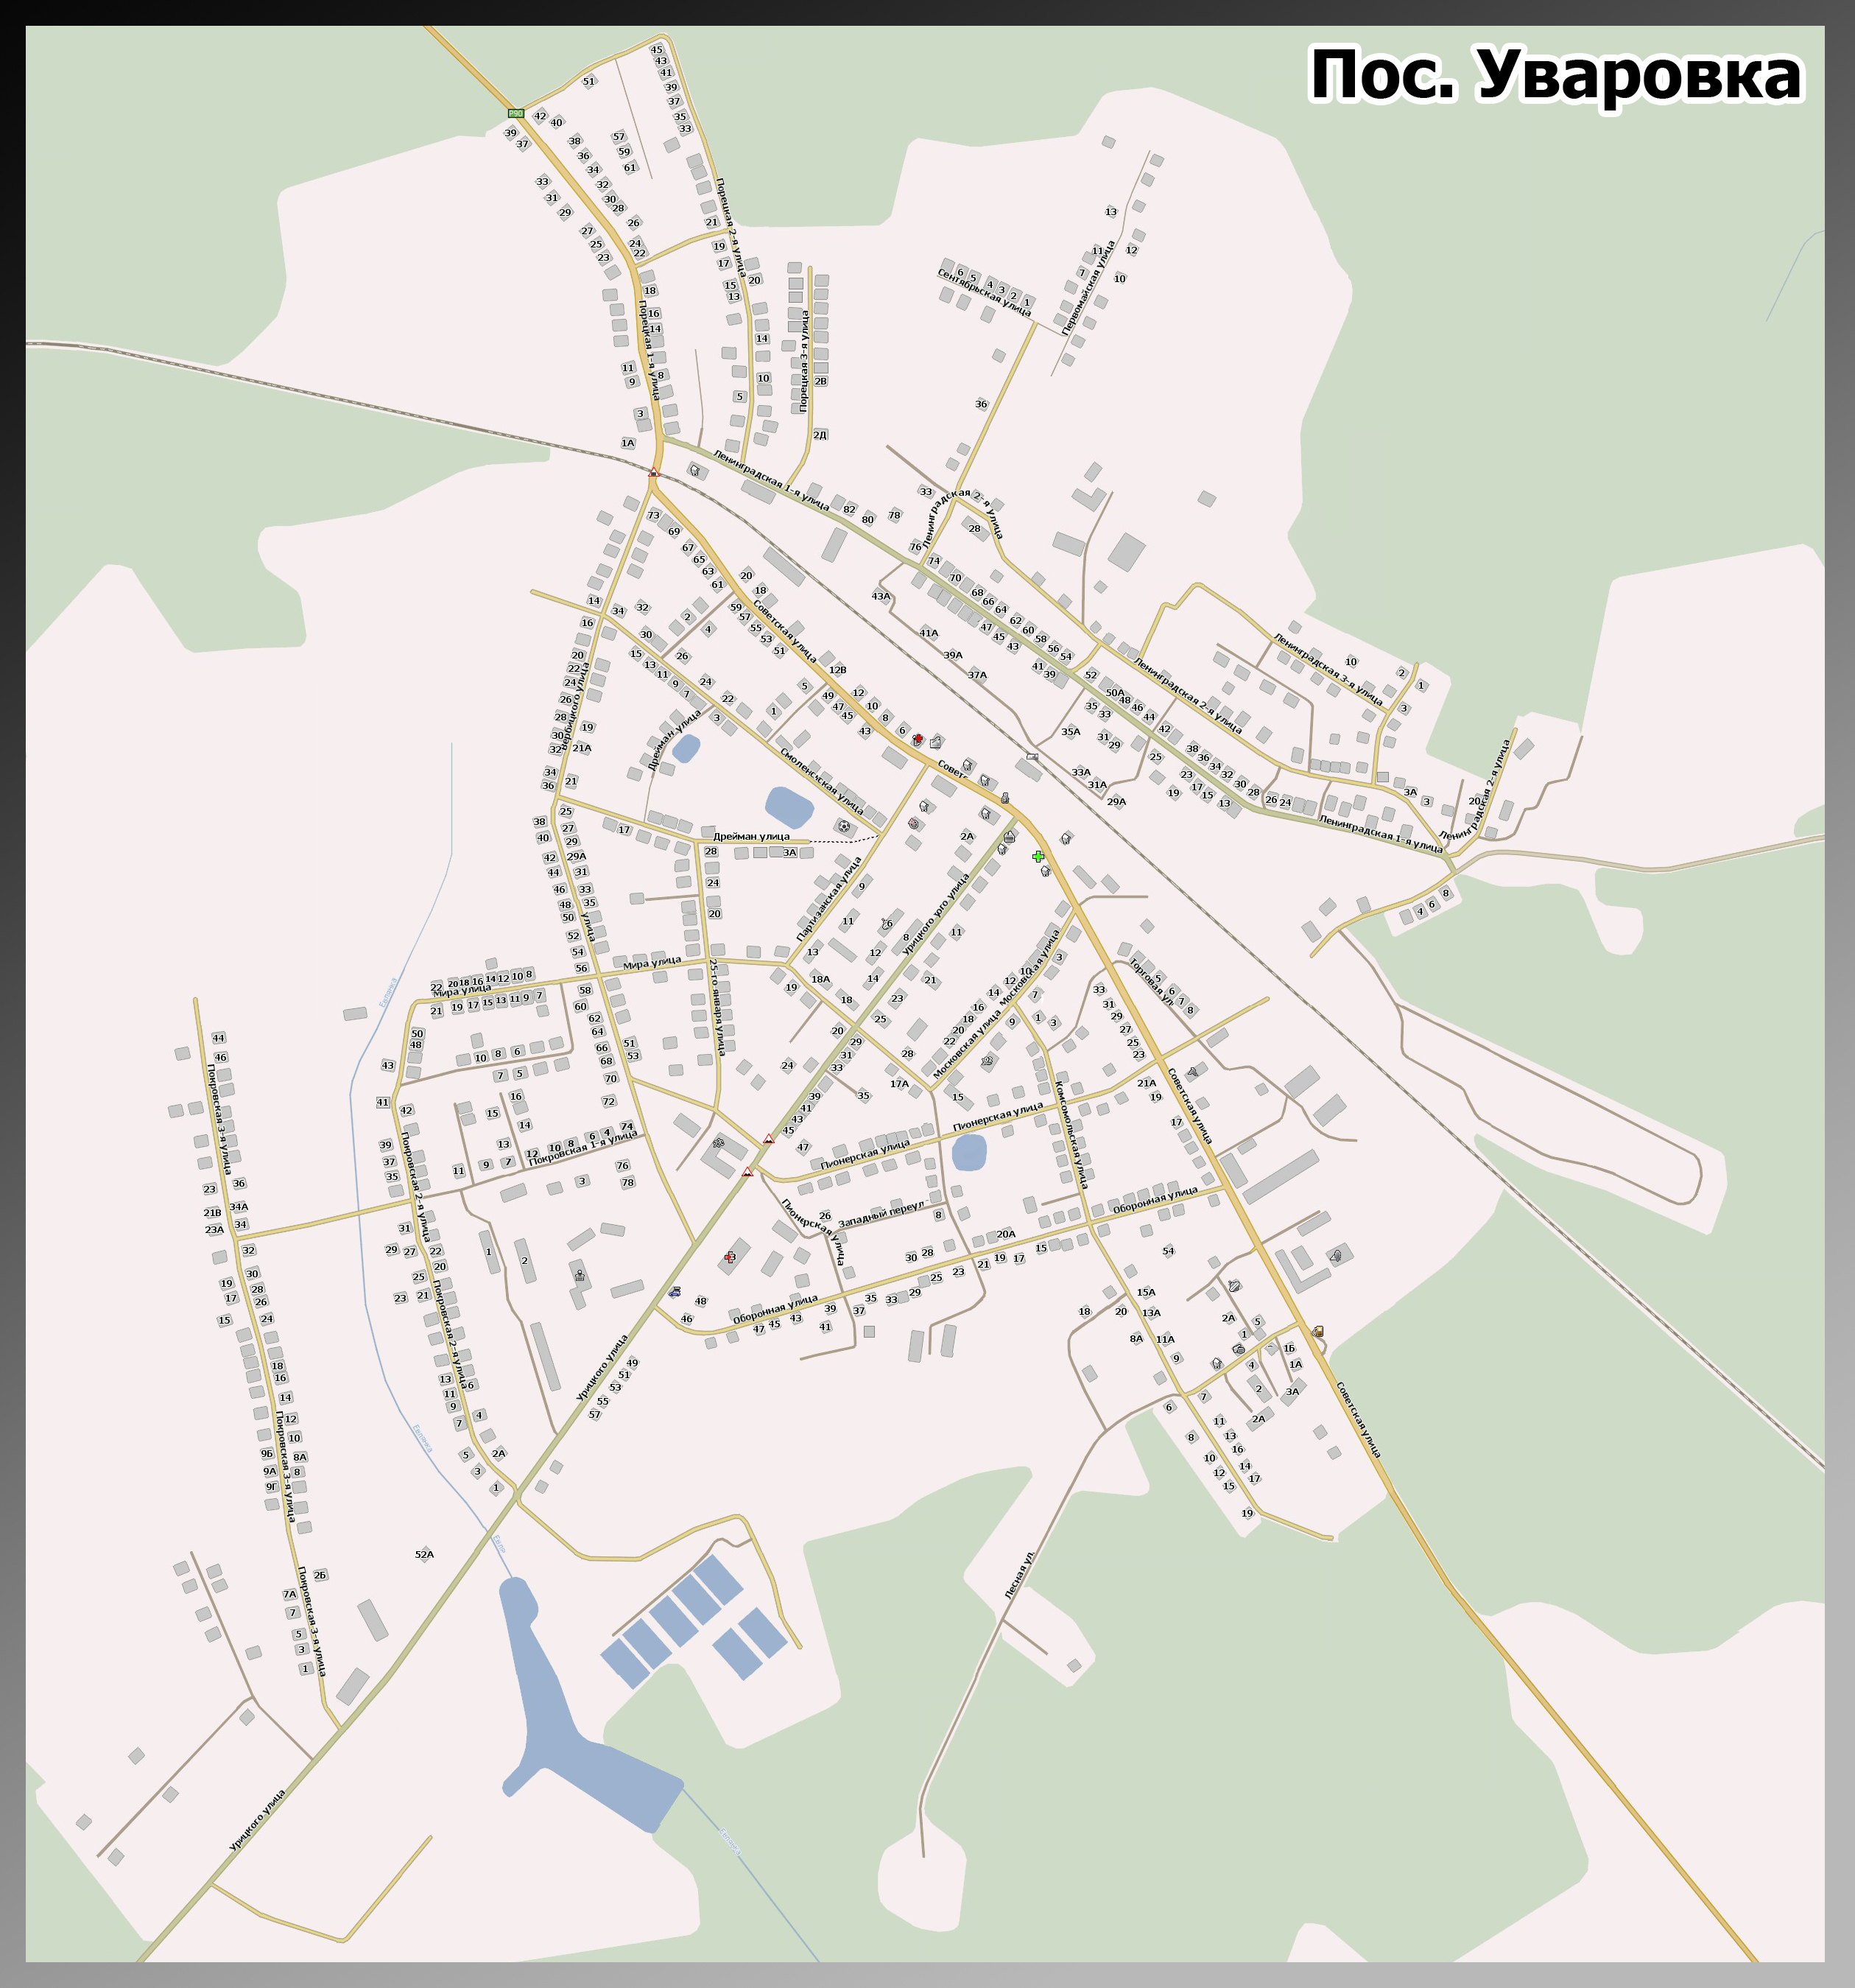 Подробная карта поселка Уваровка Можайского района